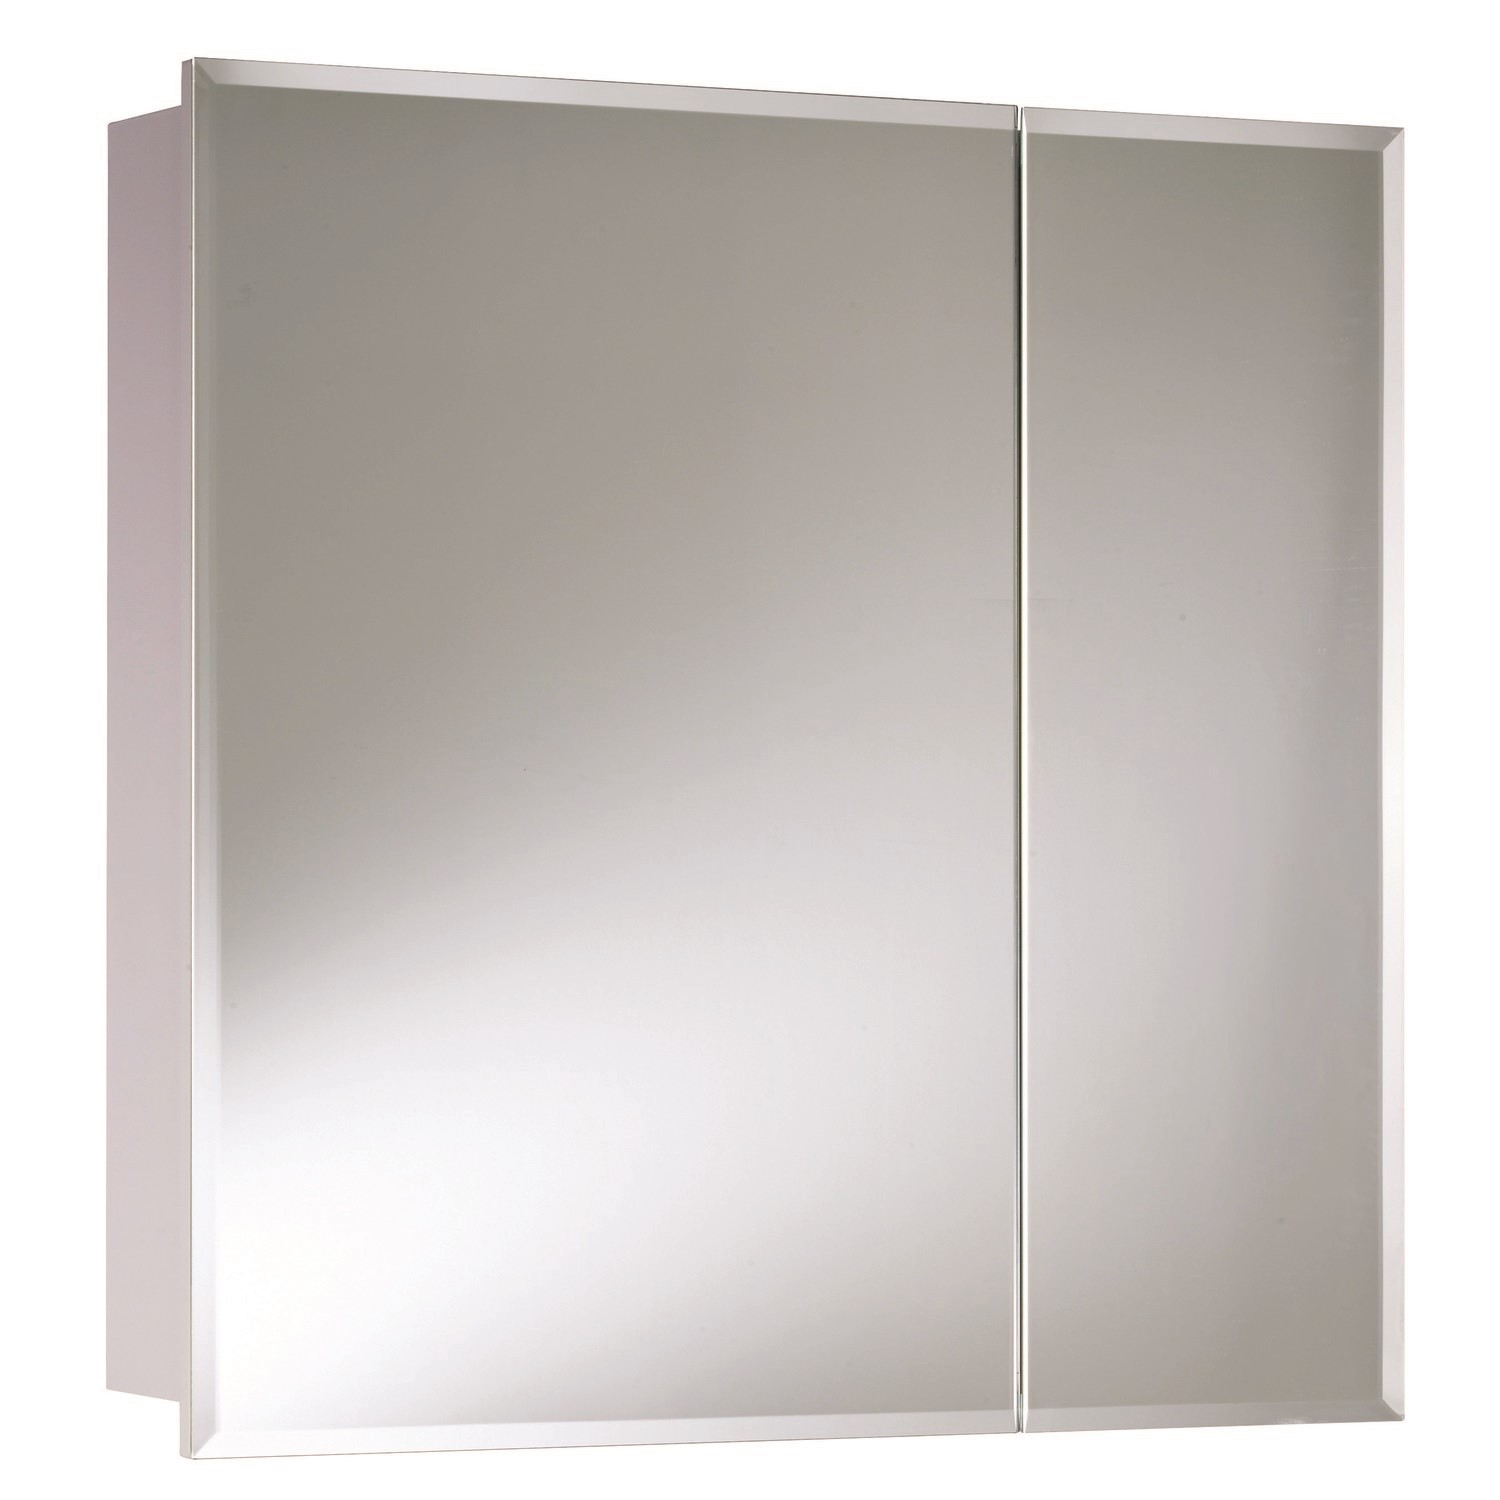 Steel Mirrored Wall Bathroom Cabinet 610 x 610mm - Croydex